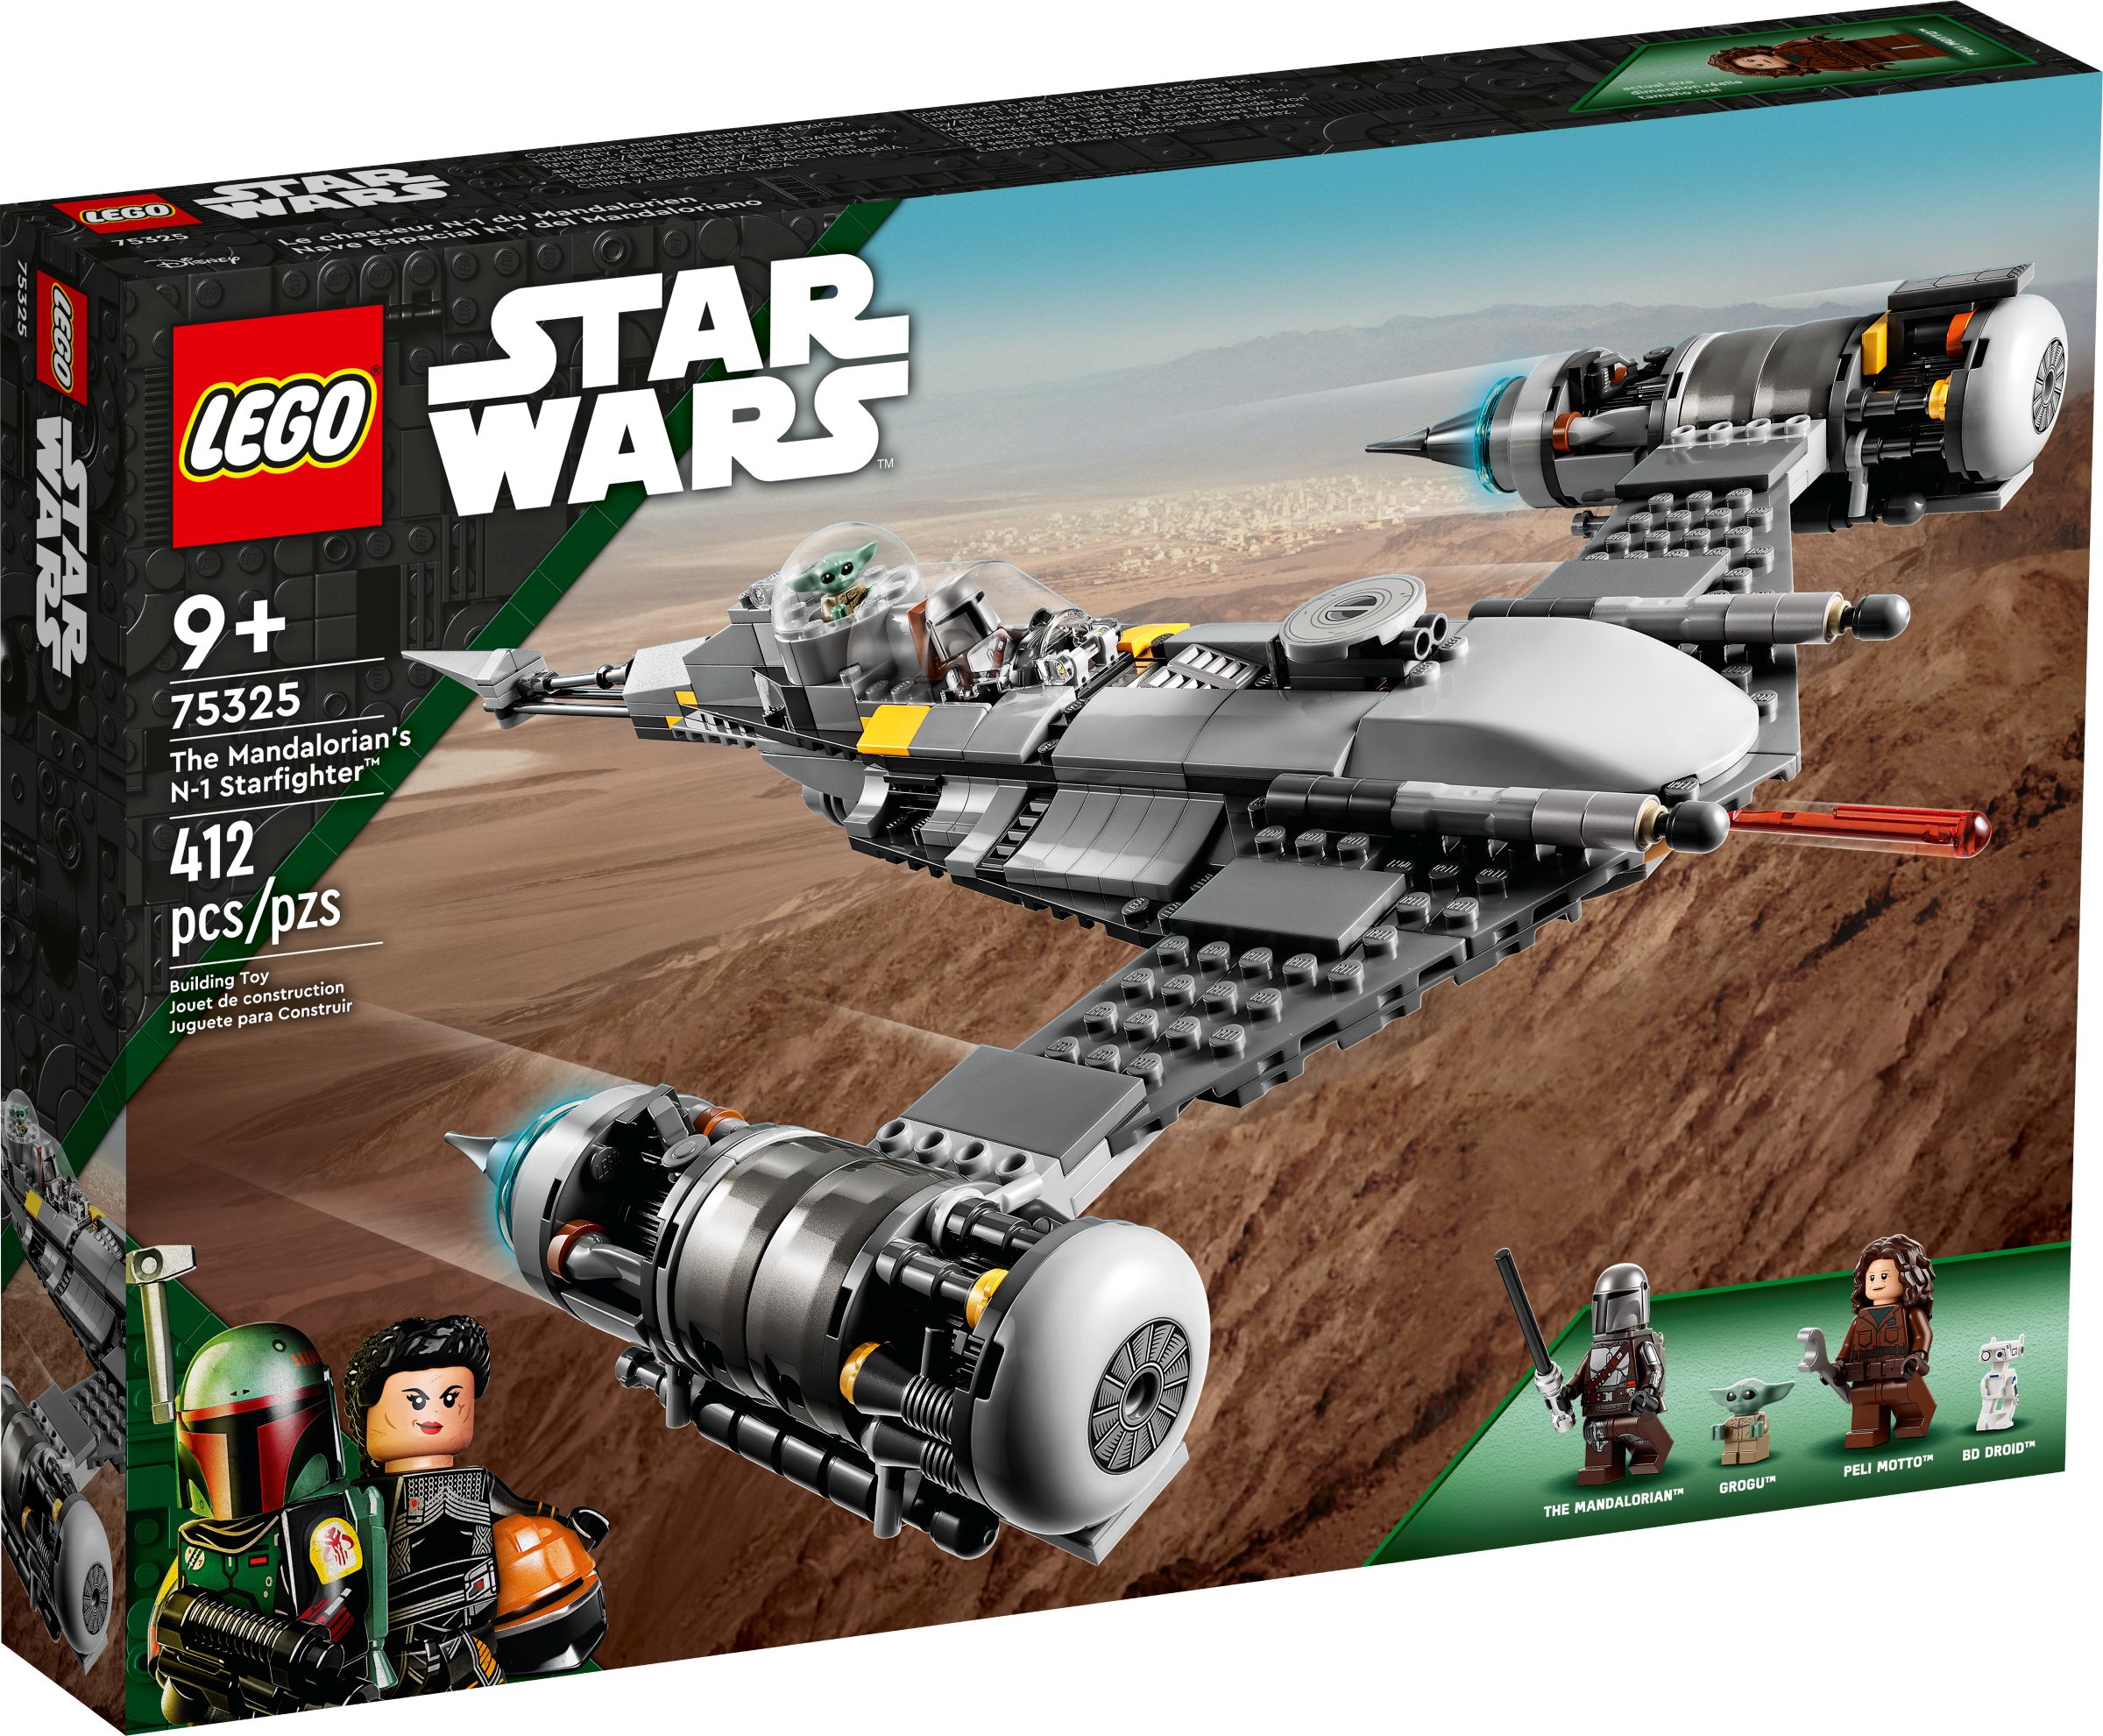 LEGO Star Wars 75325 Der N-1 Starfighter des Mandalorianers LEGO_75325_alt1.jpg